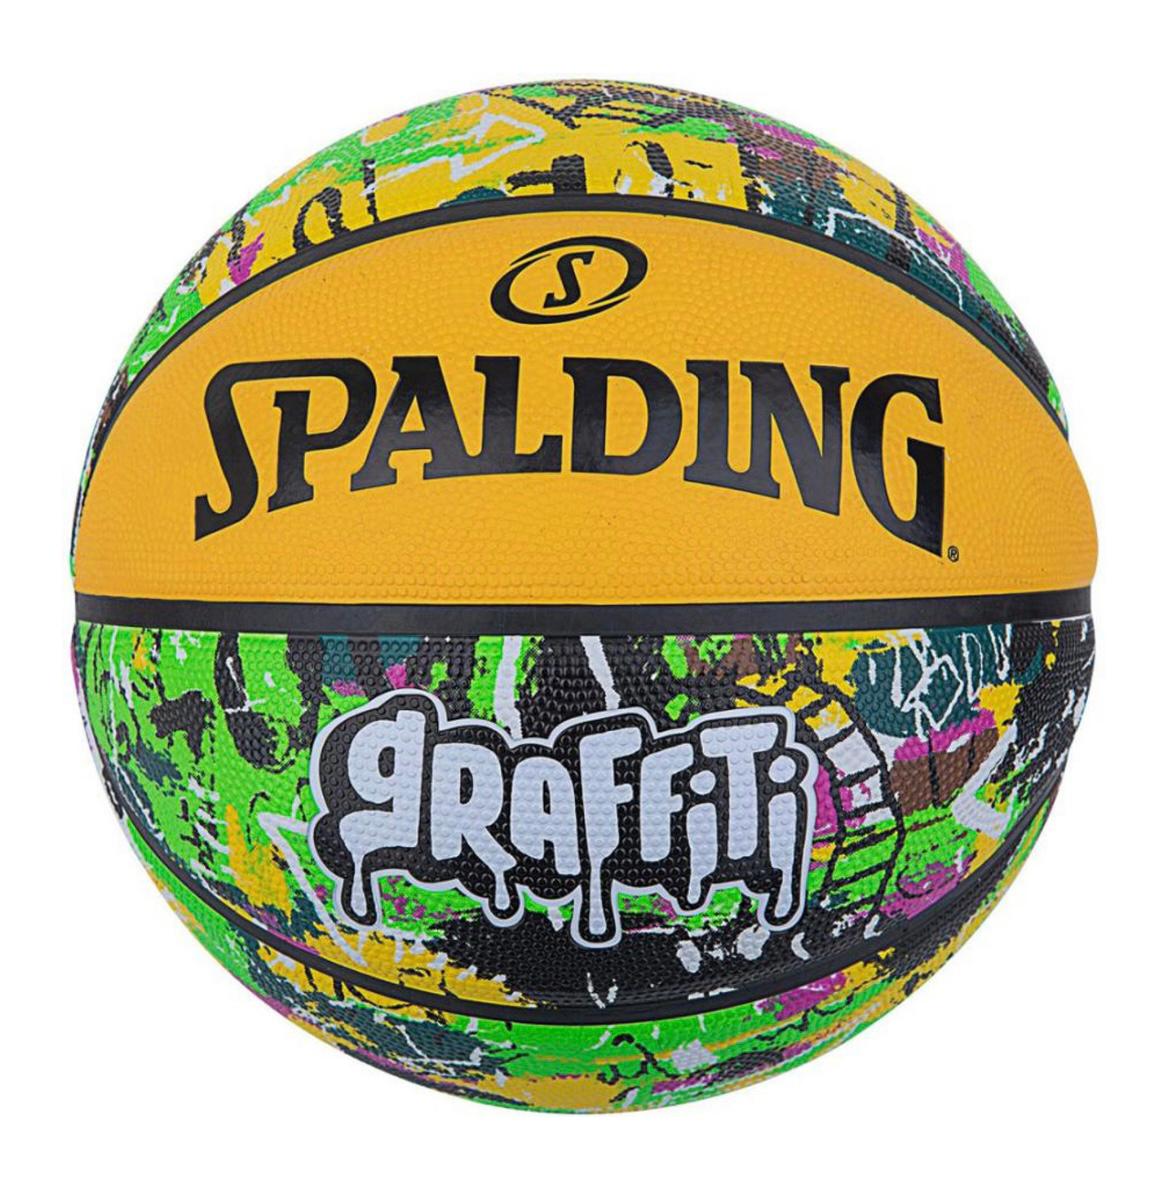 Spalding Yellow Graffiti Basketball